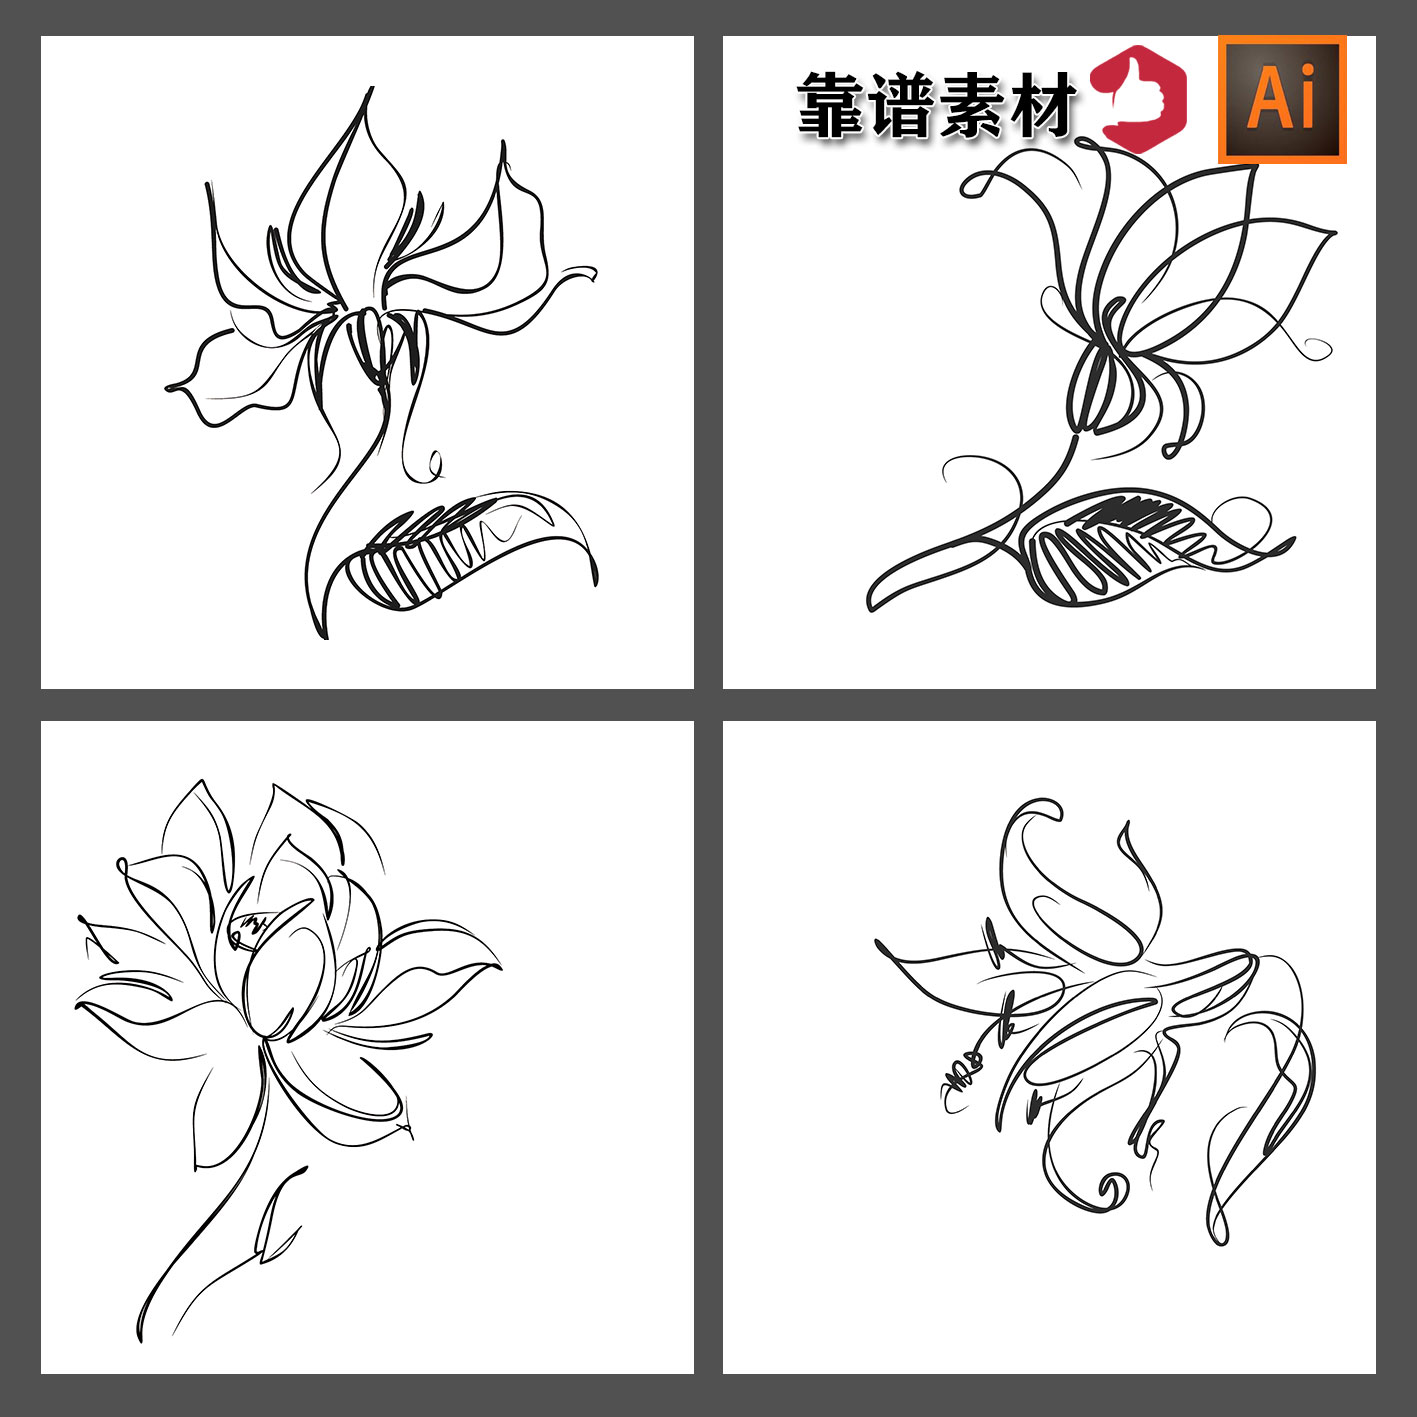 手绘艺术抽象线条线描抽象简笔画鲜花花朵装饰画AI矢量设计素材